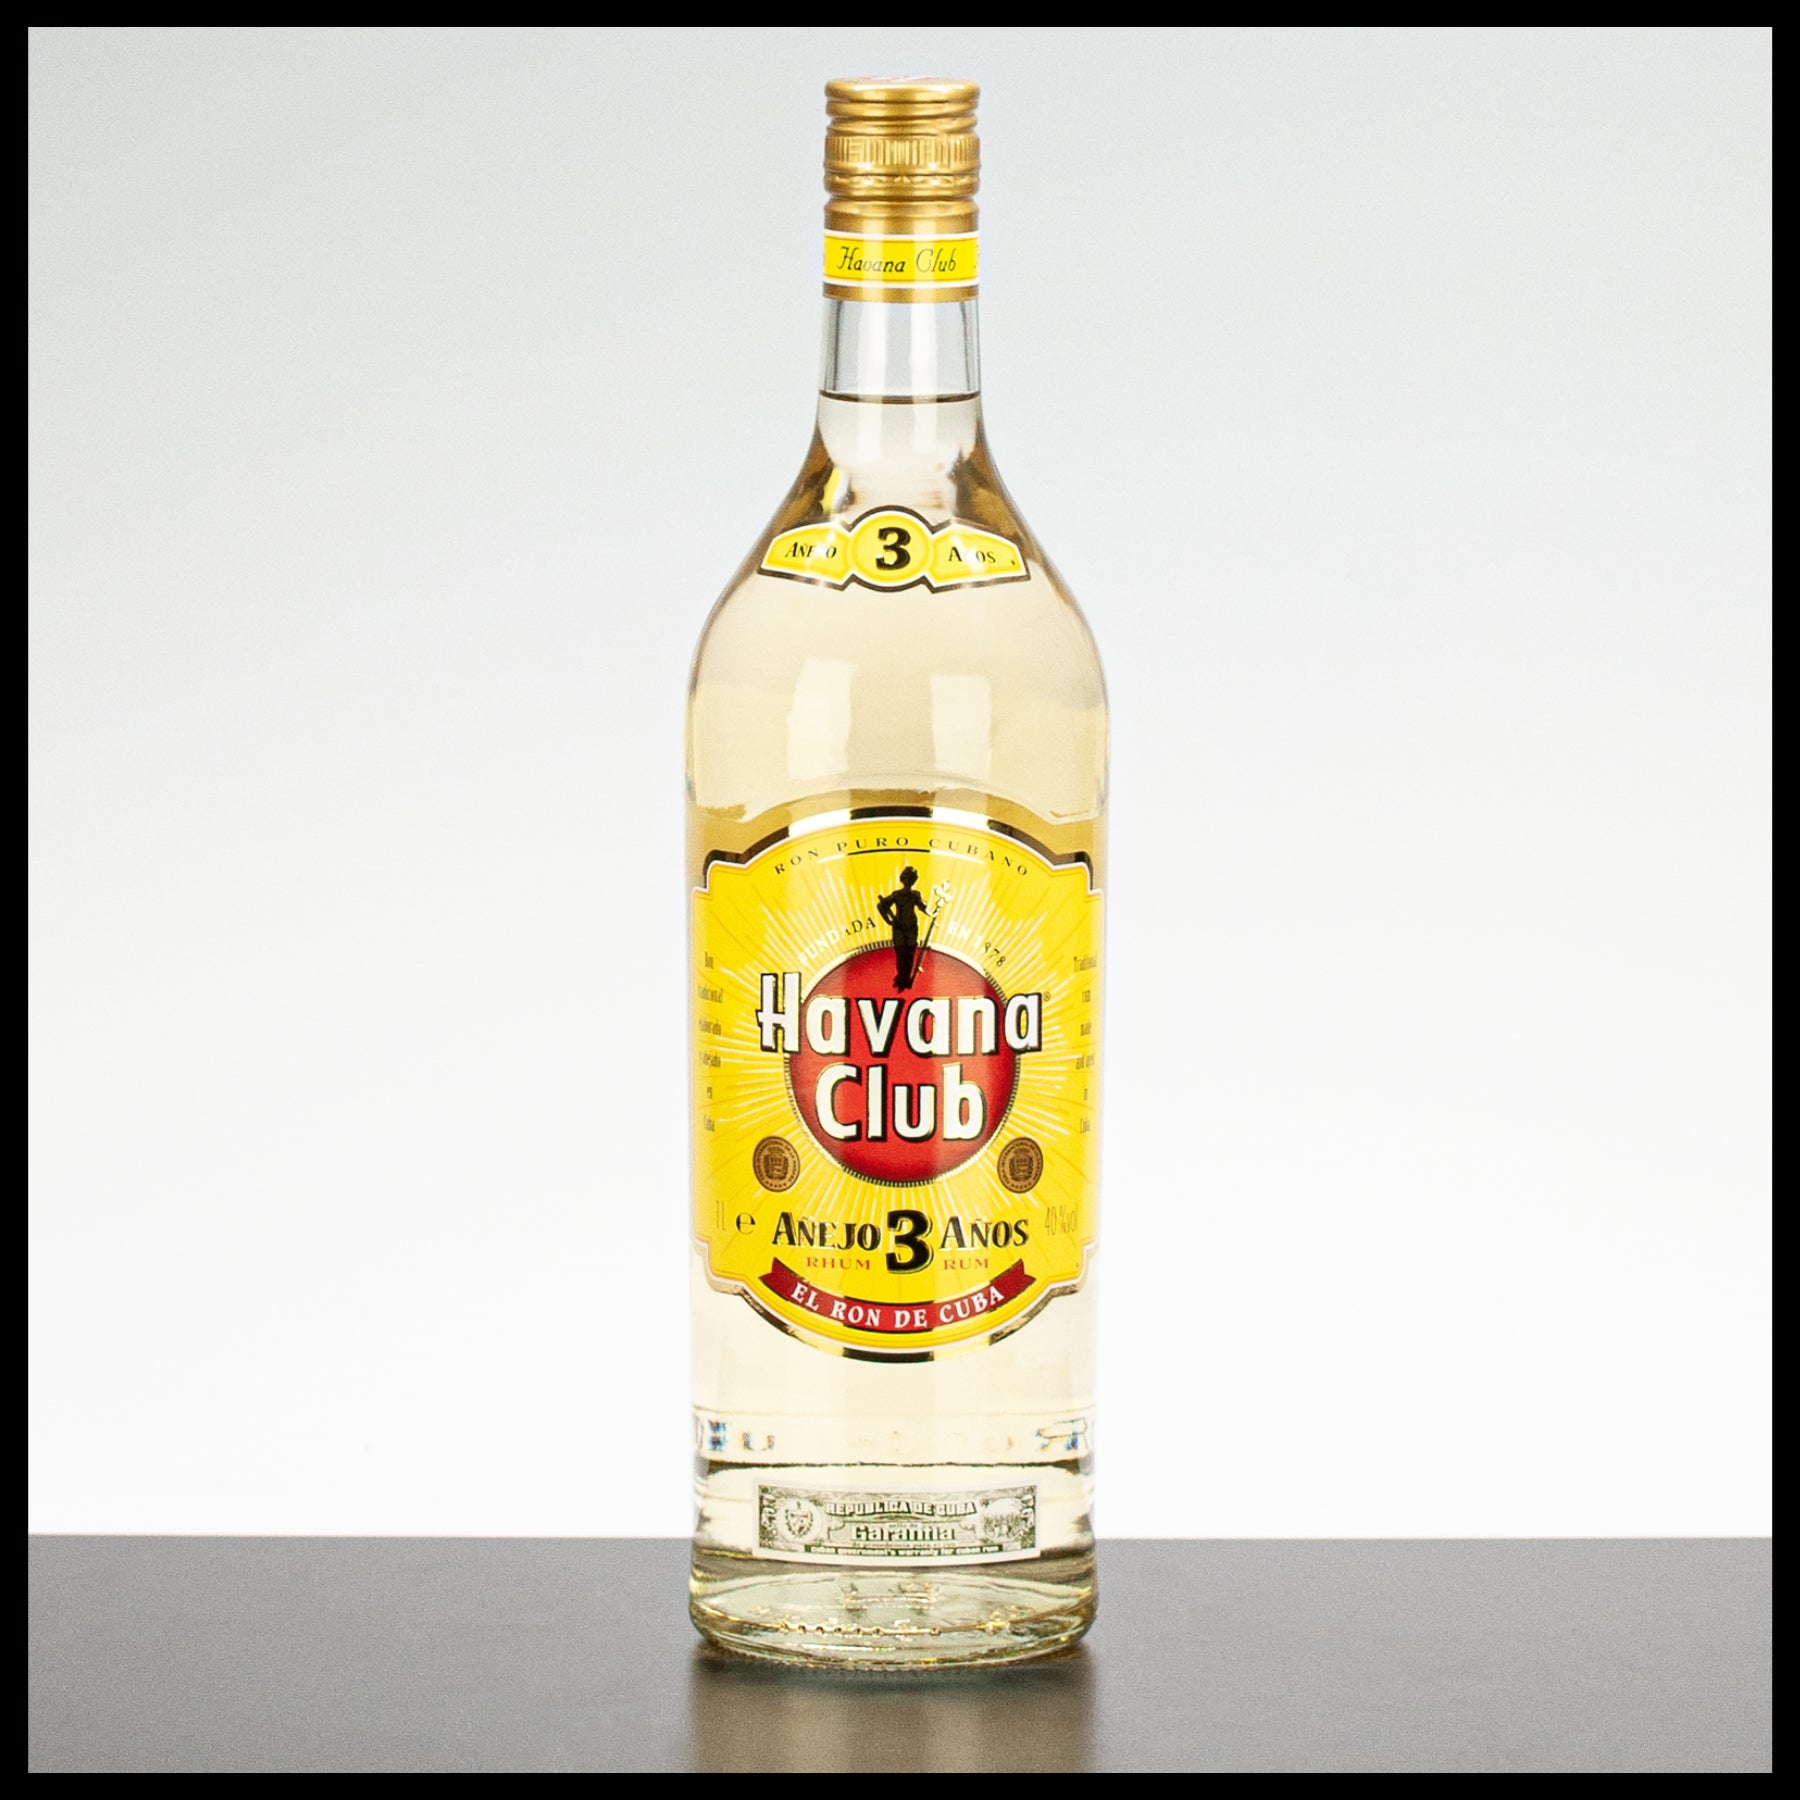 Havana Club Anejo - Rum Anos 1L 40% 3